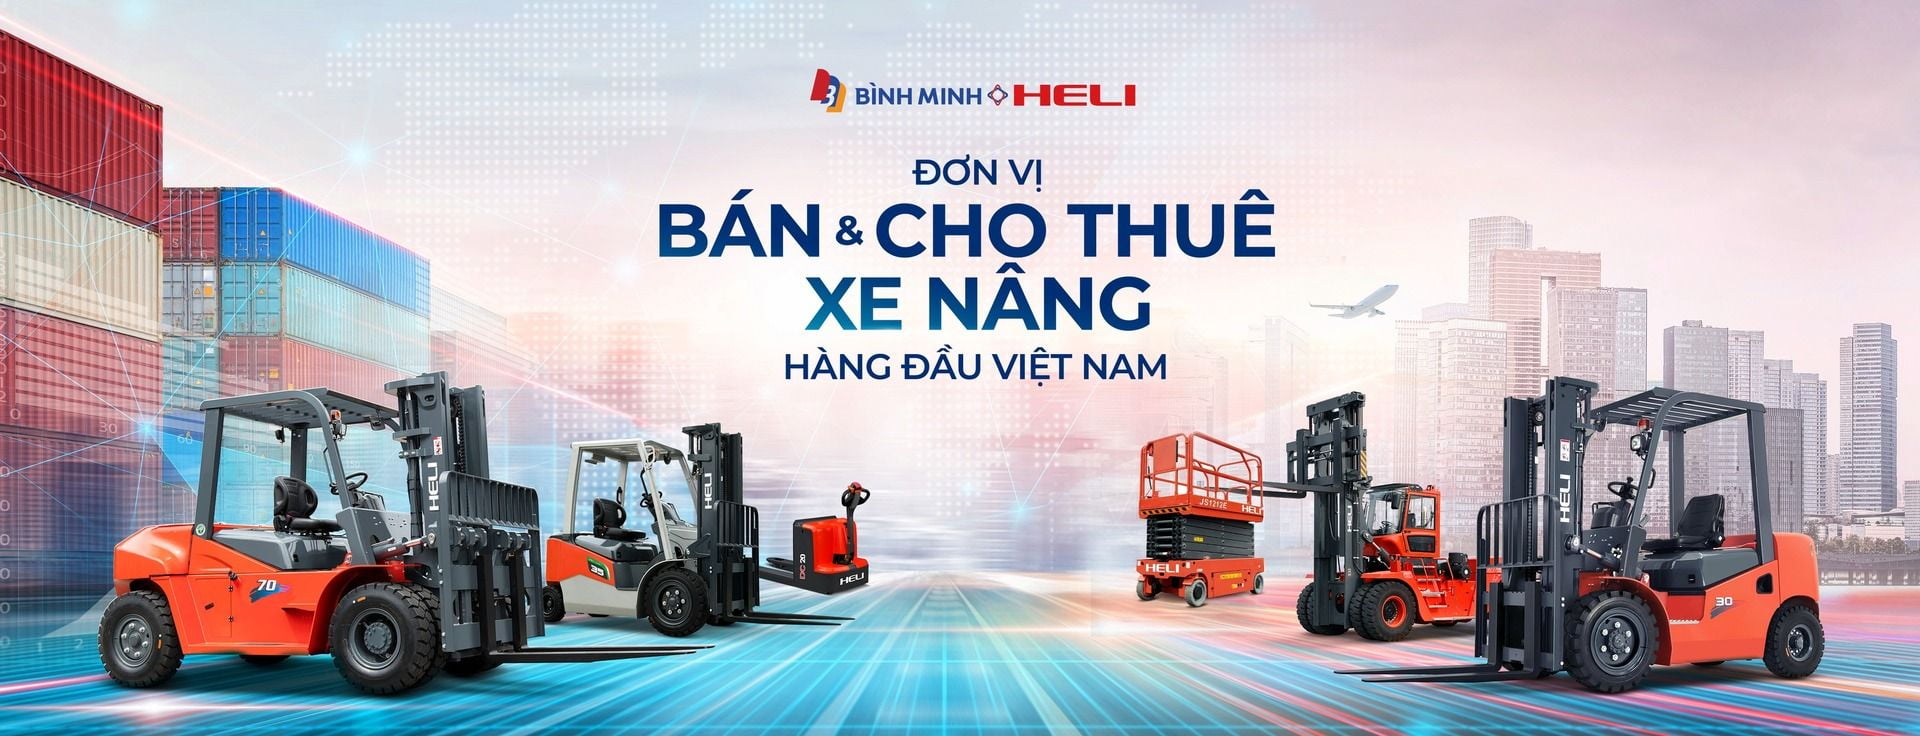 Đơn vị buôn bán và cho thuê xe nâng số 1 Việt Nam